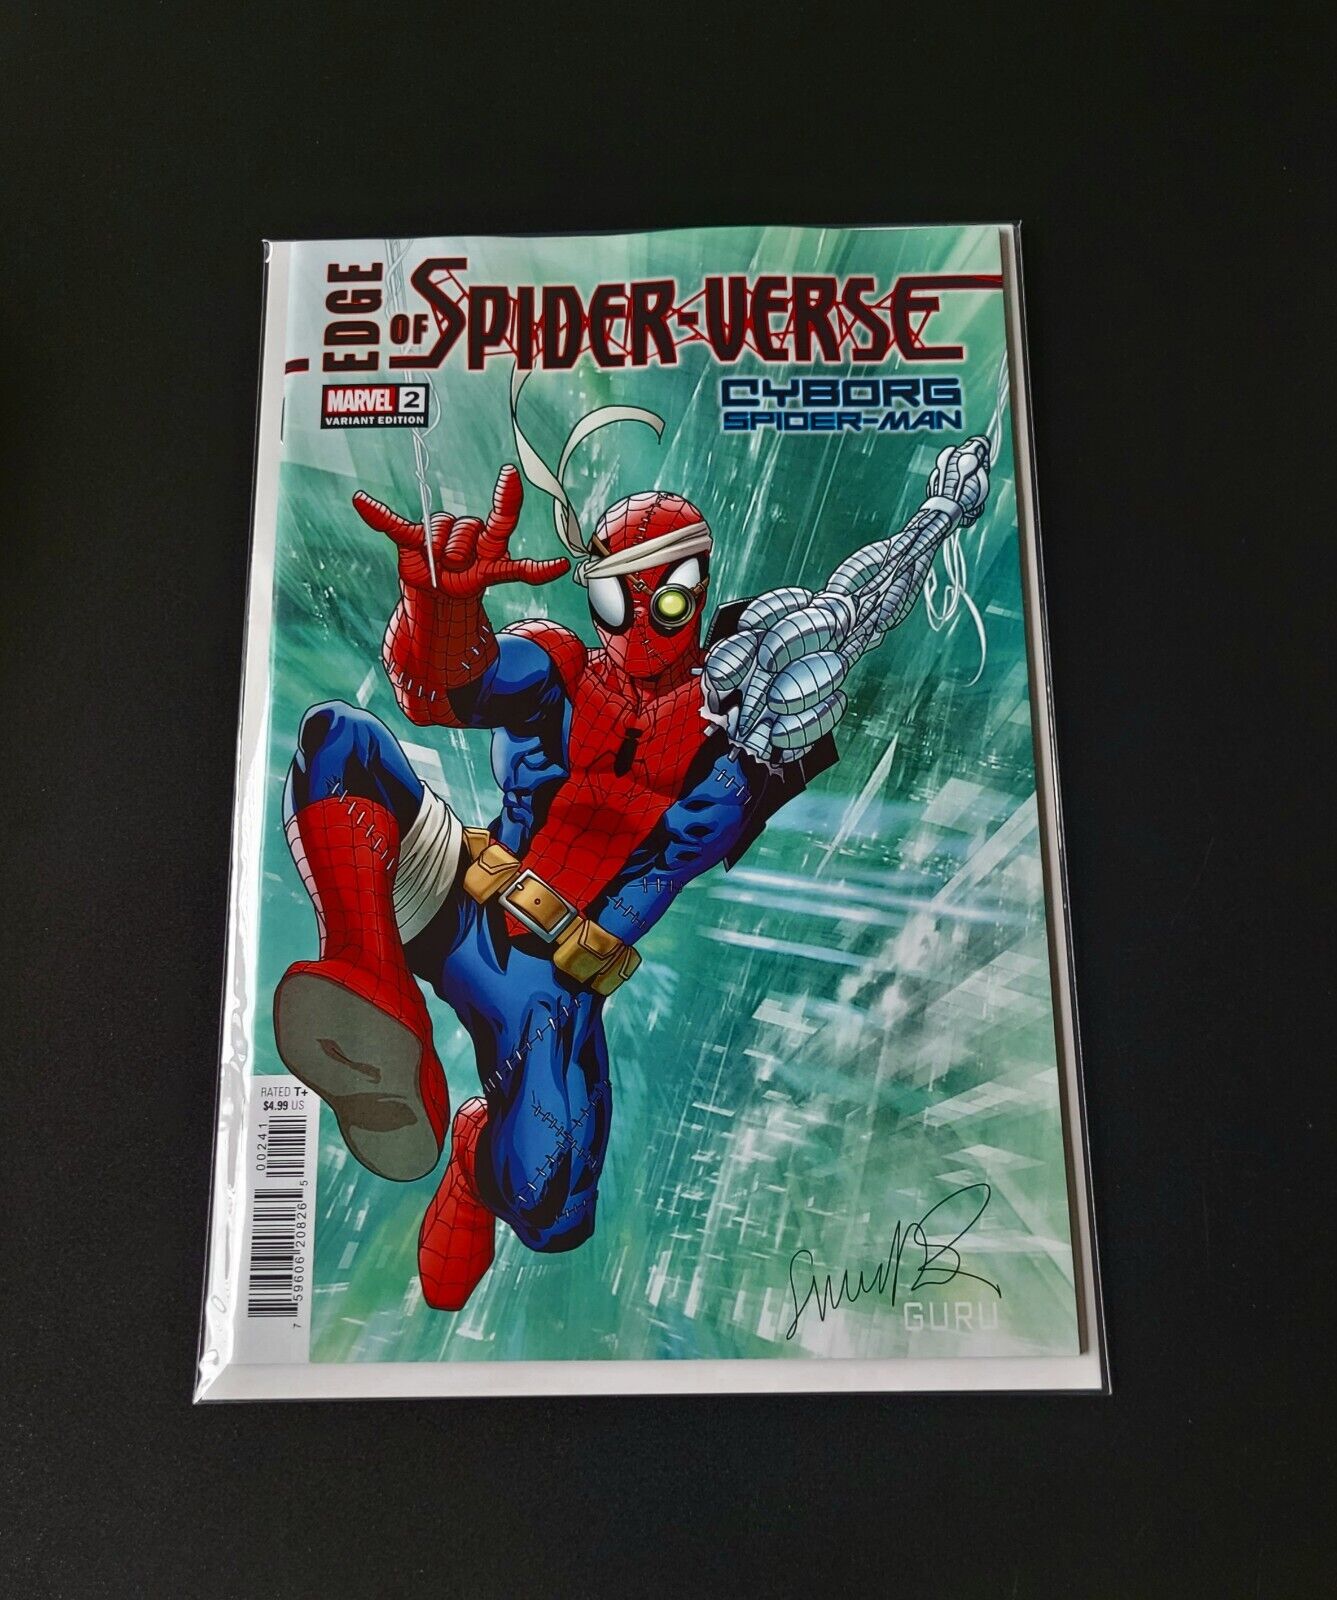 Edge Of Spider-Verse Vol 4 #2 Cyborg Spider-Man Variant